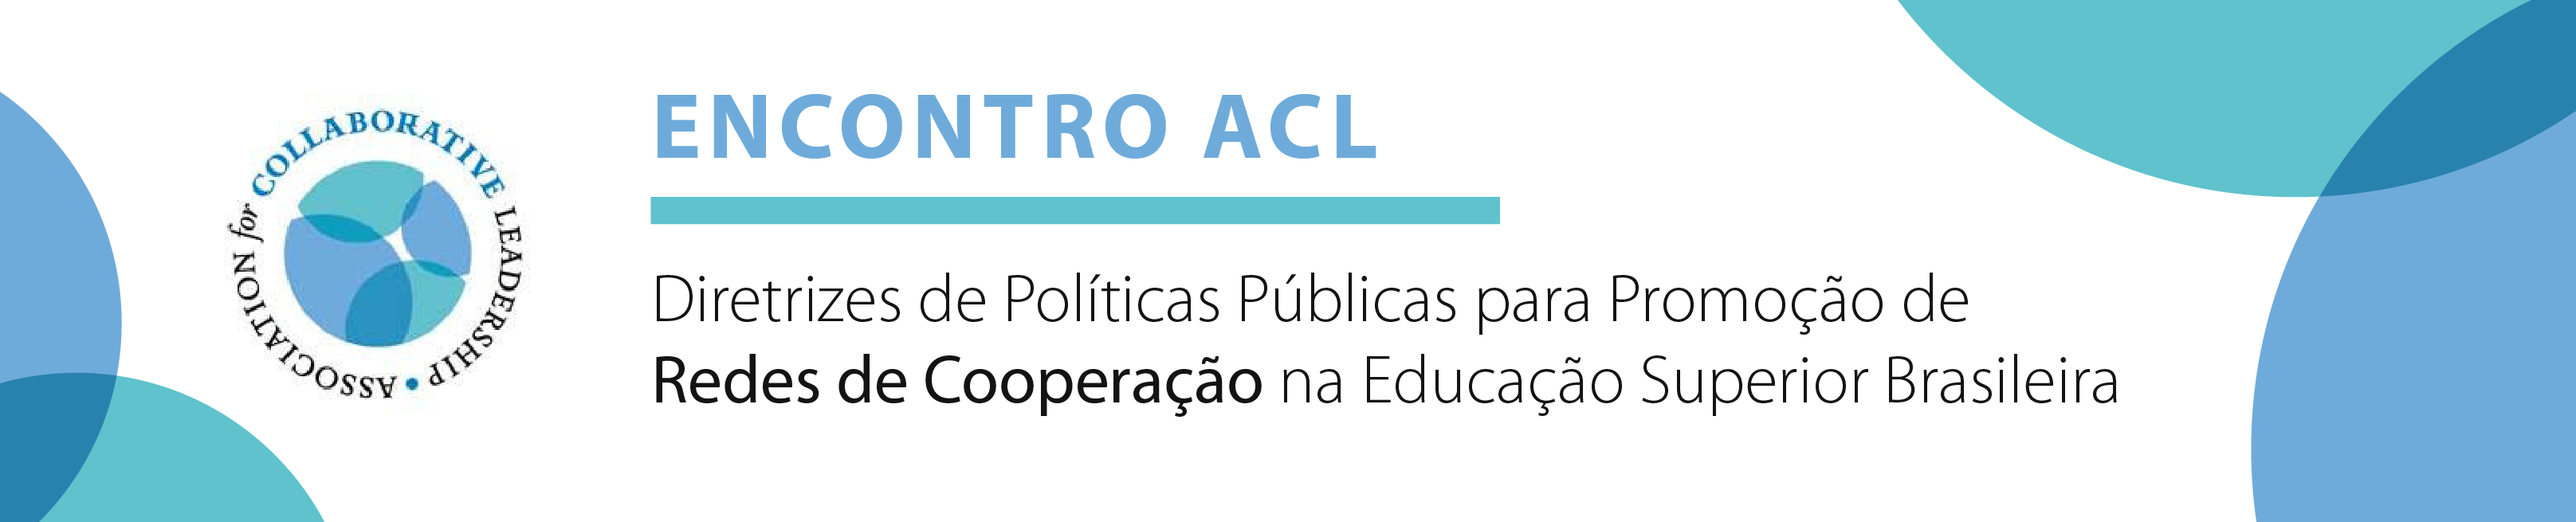 Encontro ACL - Diretrizes de Políticas Públicas para Promoção de Redes de Cooperação na Educação Superior Brasileira